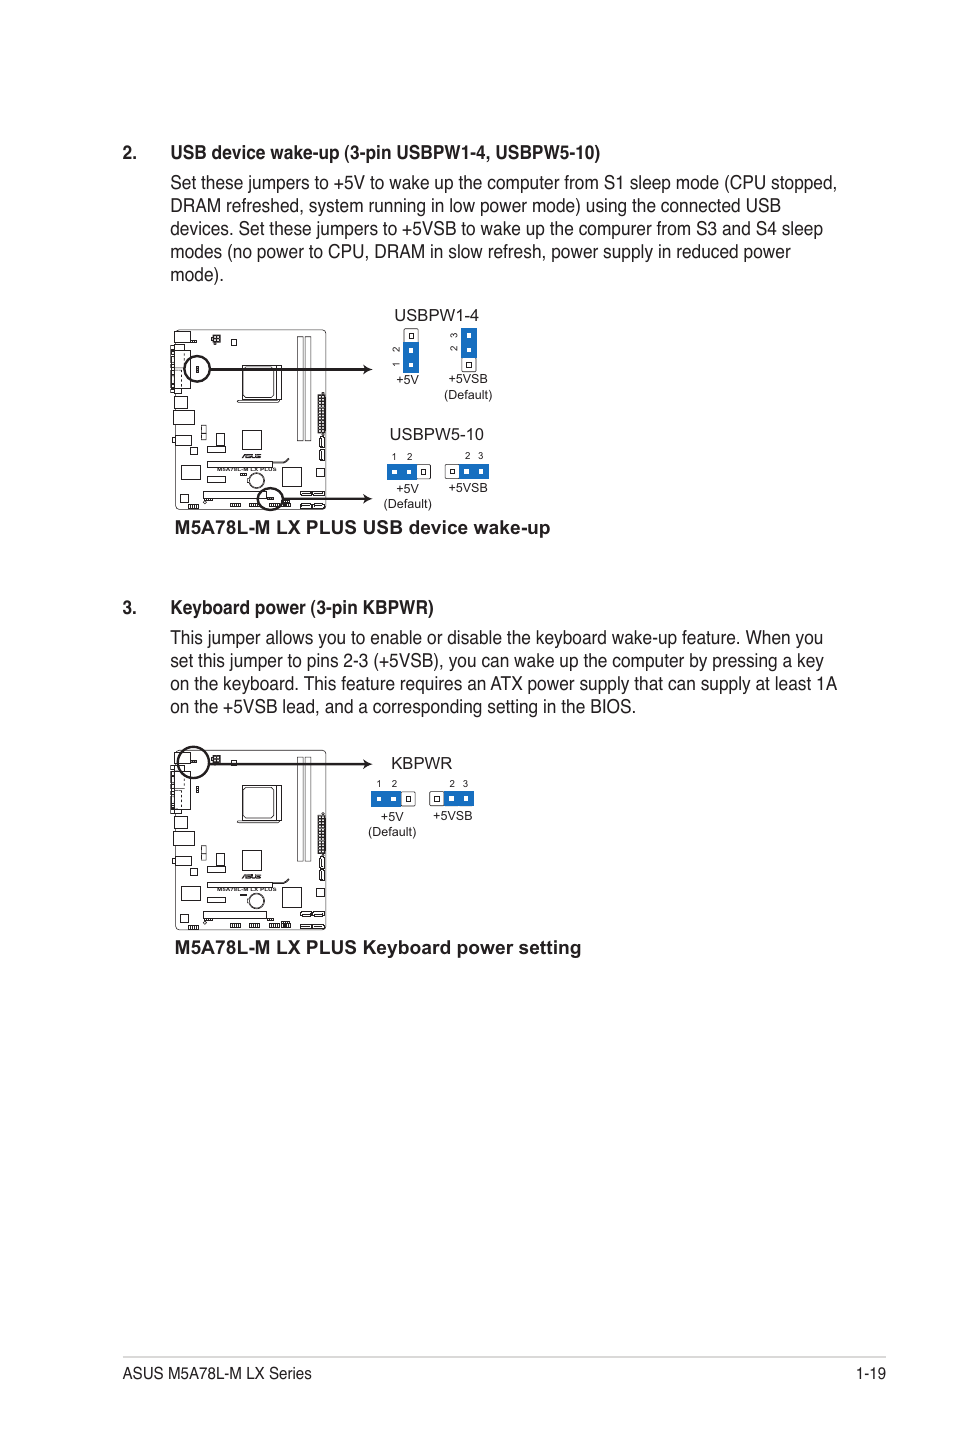 ASUS M5A78L-M LX V2 MANUAL PDF